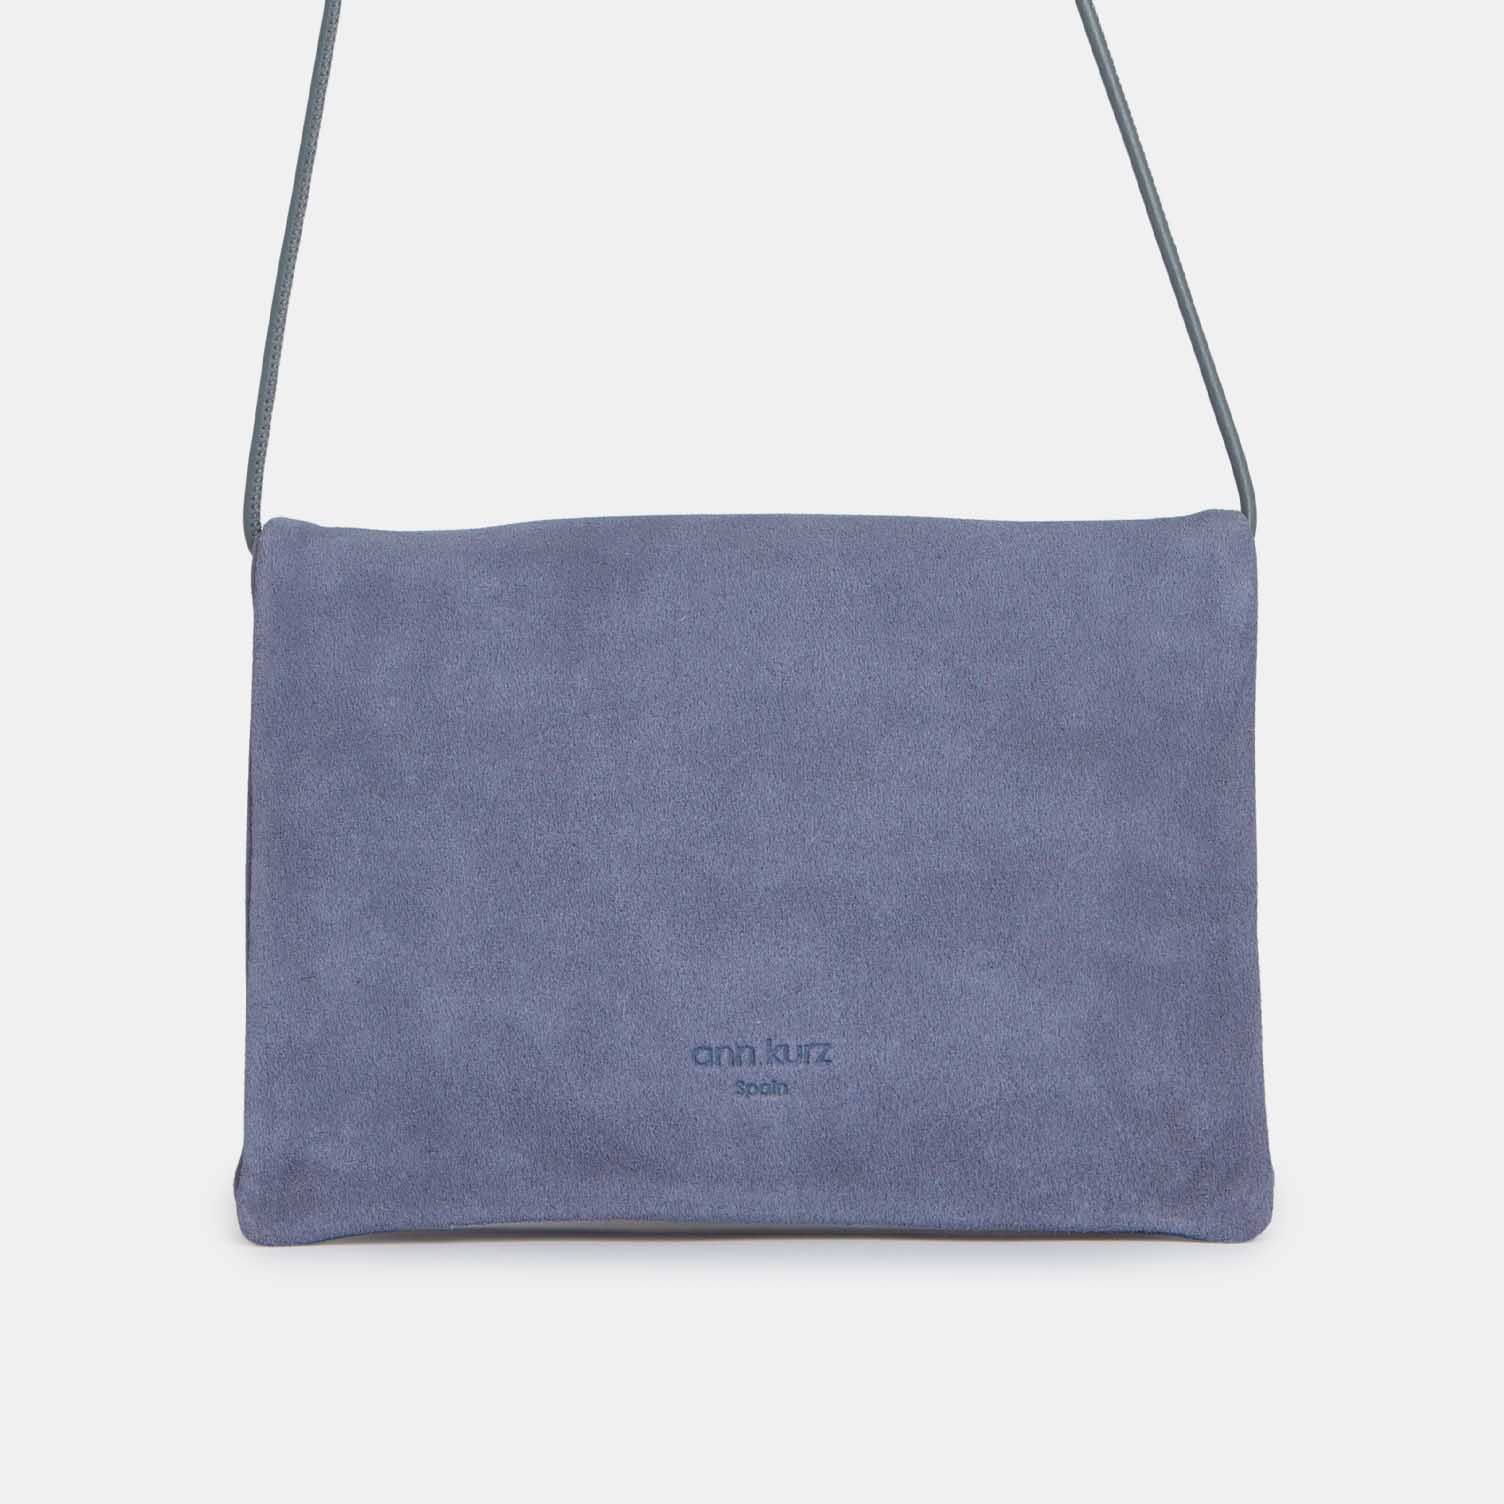 ann kurz Little Double-Compartment Bag | New -Suede Lavender Blue- ann kurz